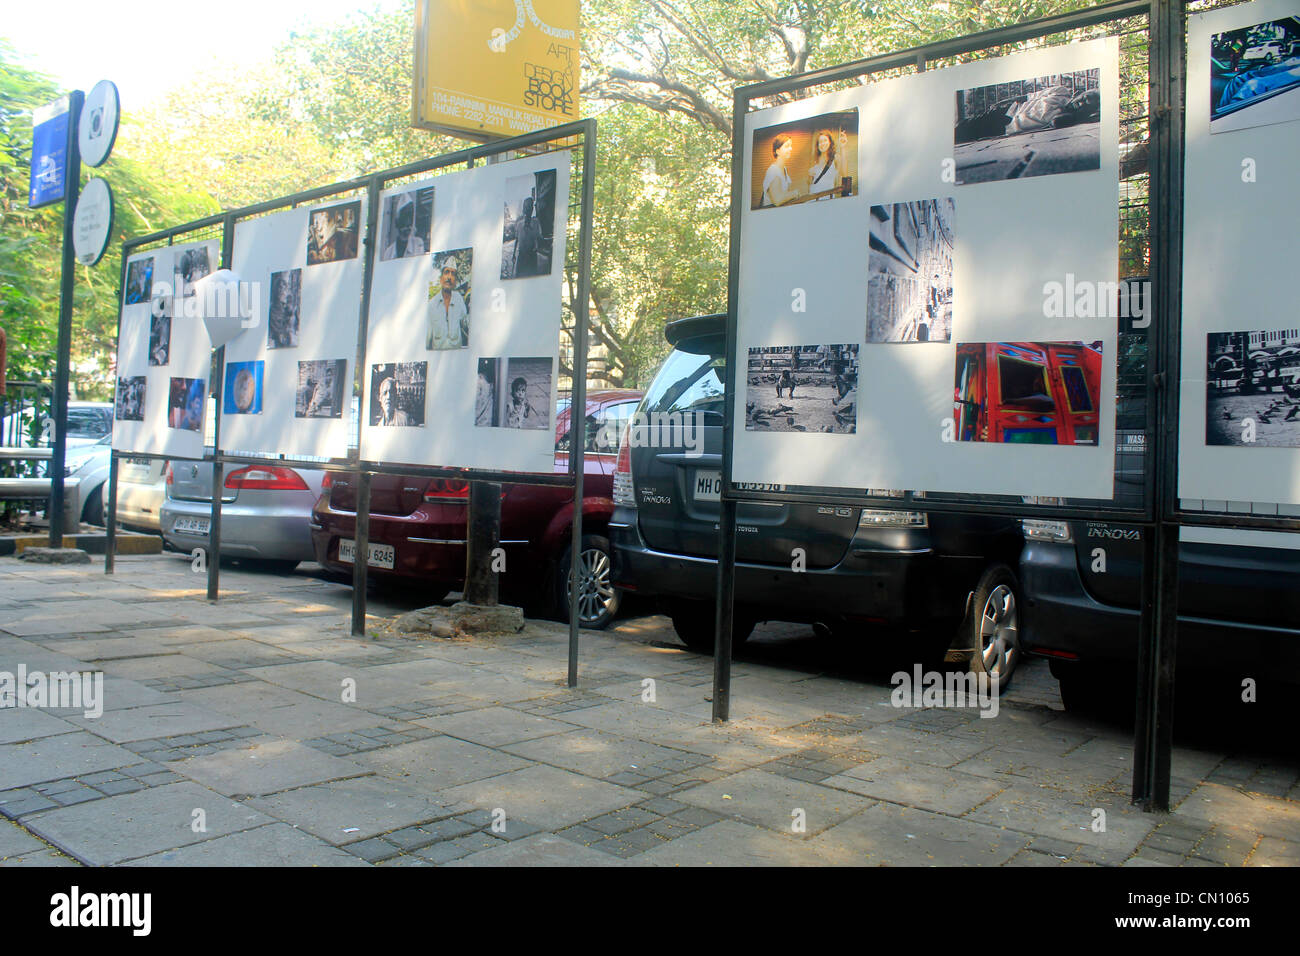 street photograhy exhibition at Kala Ghoda, mumbai, india Stock Photo